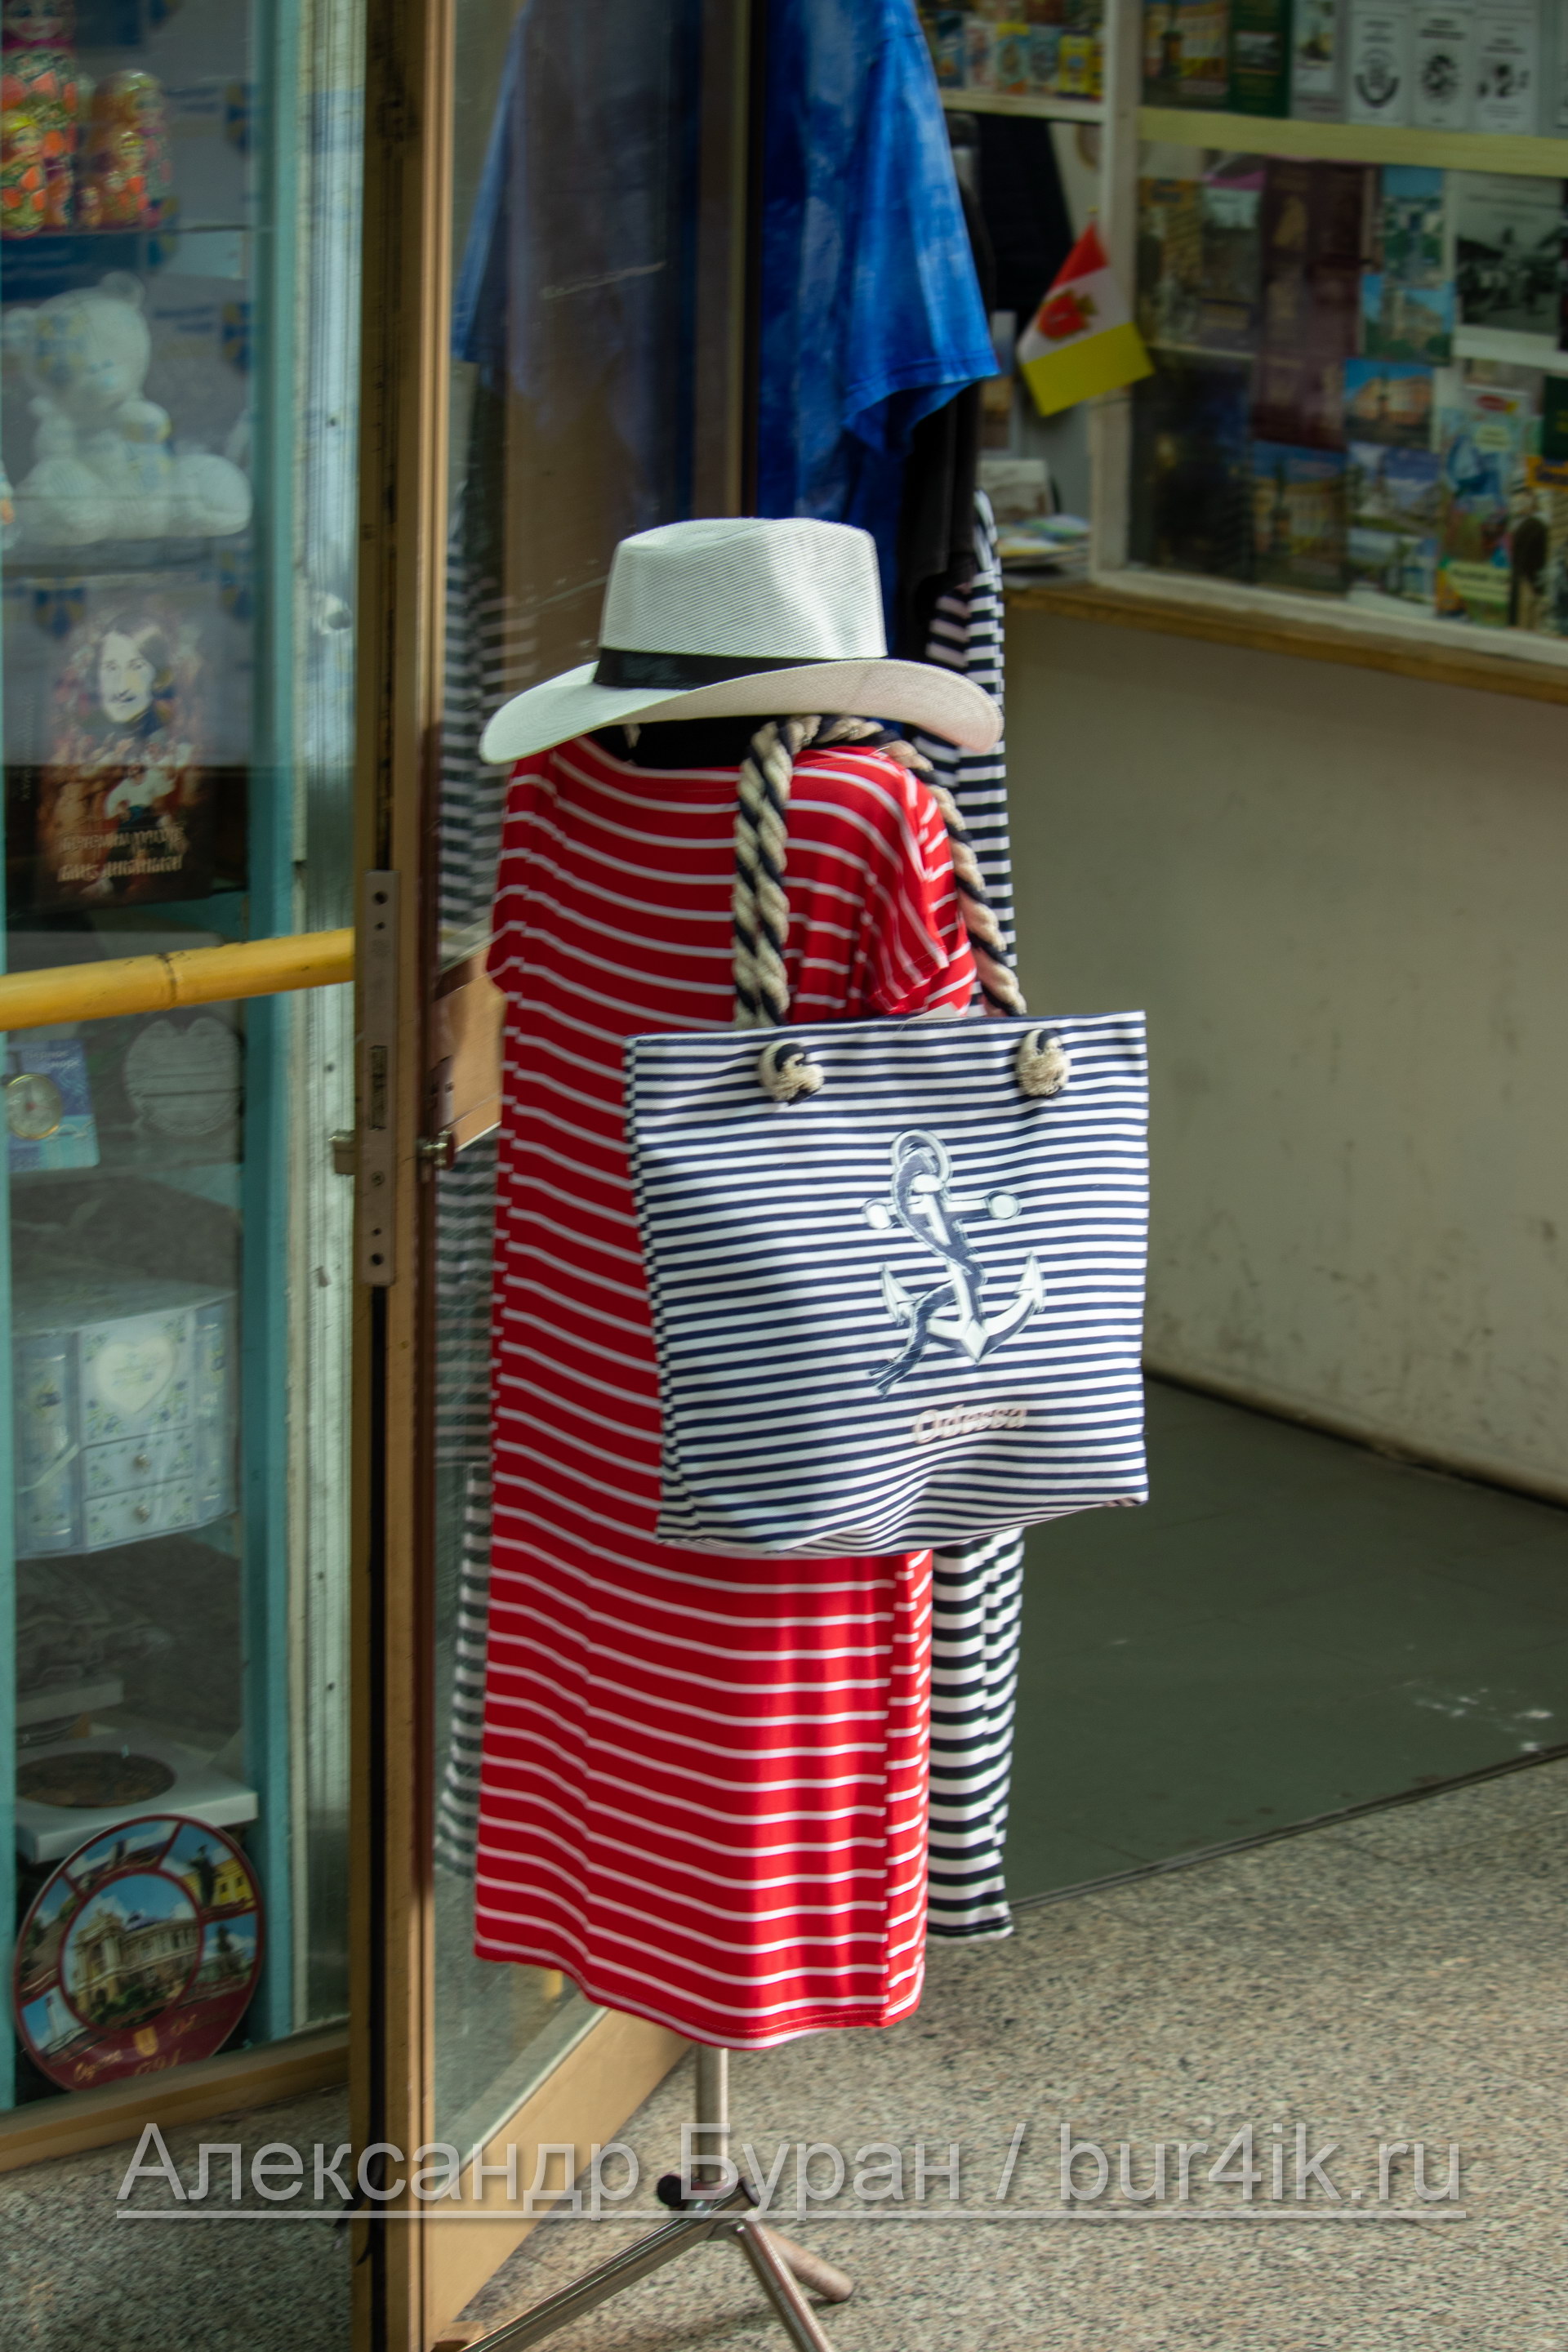 Сумка, шляпа и платье на манекене в сувенирный магазин - Украина, Одесса, 09,11,2019